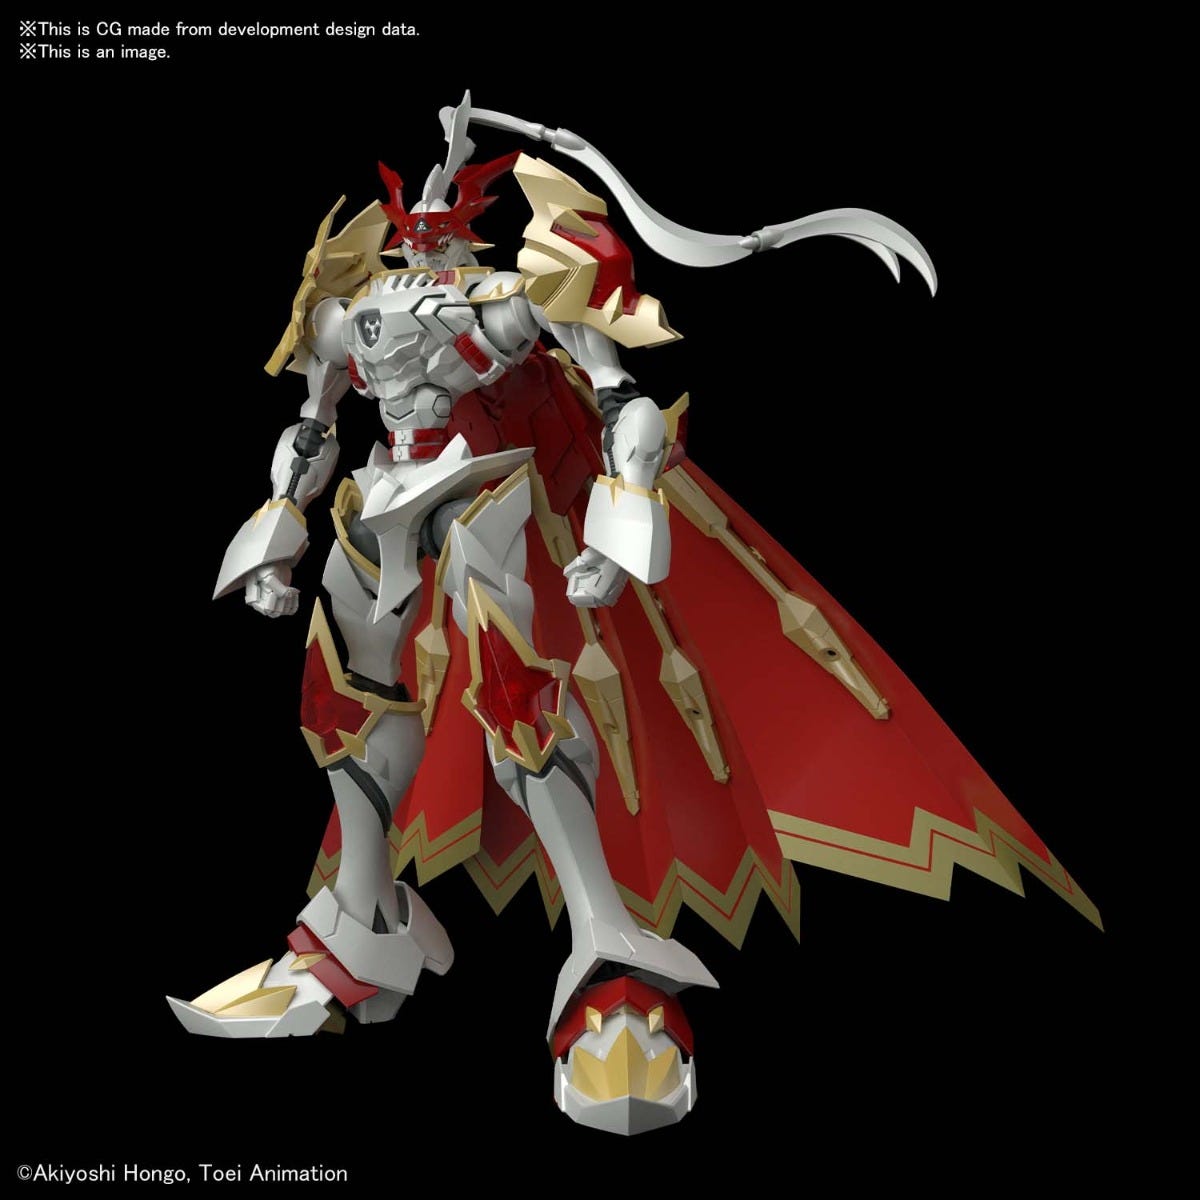 Pre-Order Figure-rise Amplified - Dukemon/Gallantmon "Digimon"